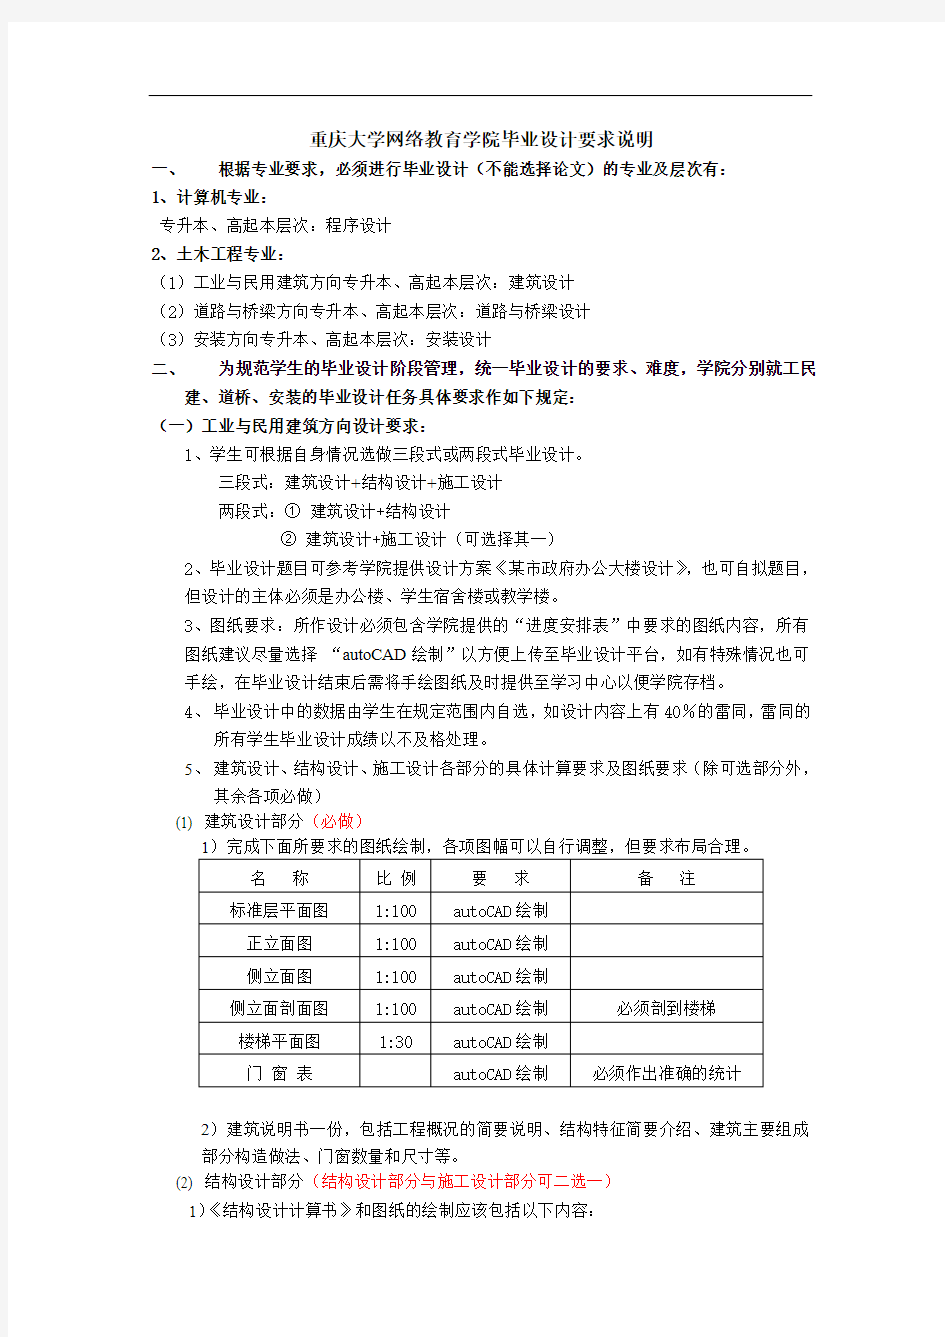 重庆大学网络教育学院毕业设计要求说明.